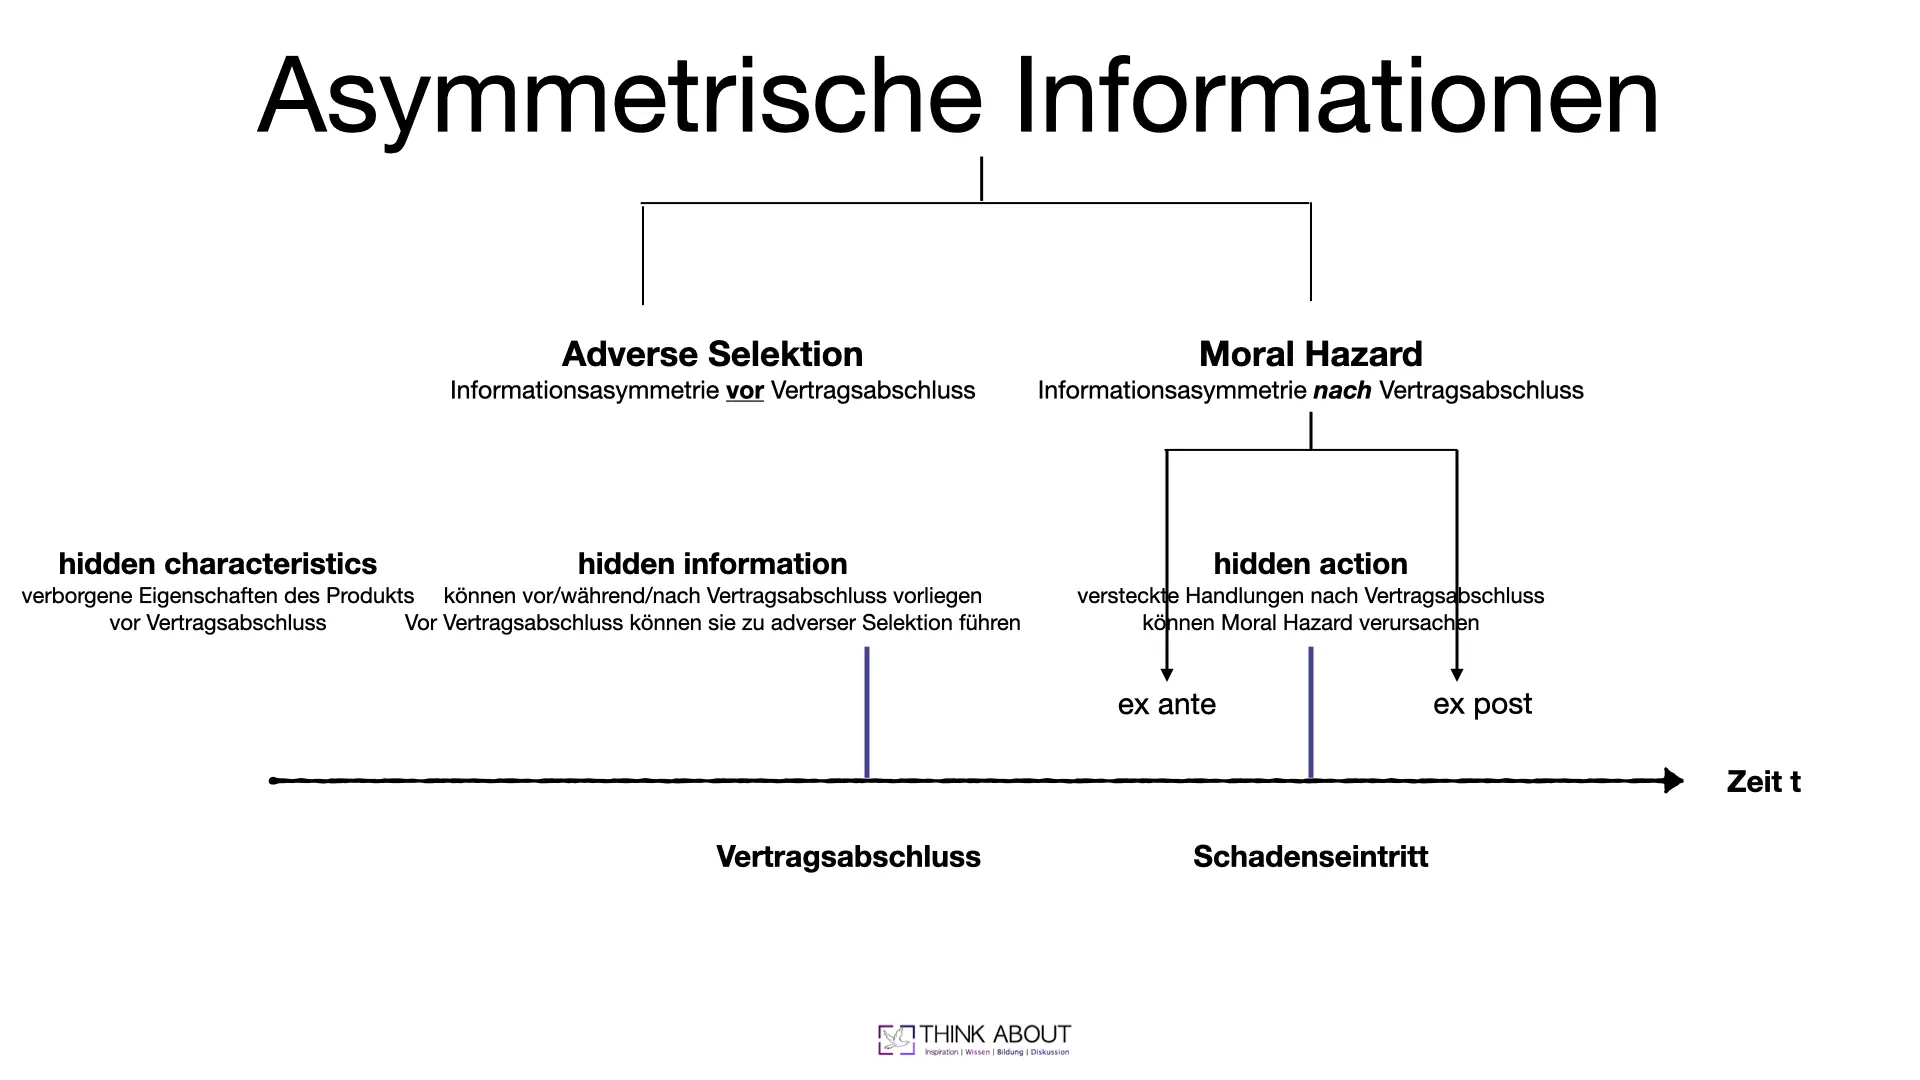 asymmetrische information